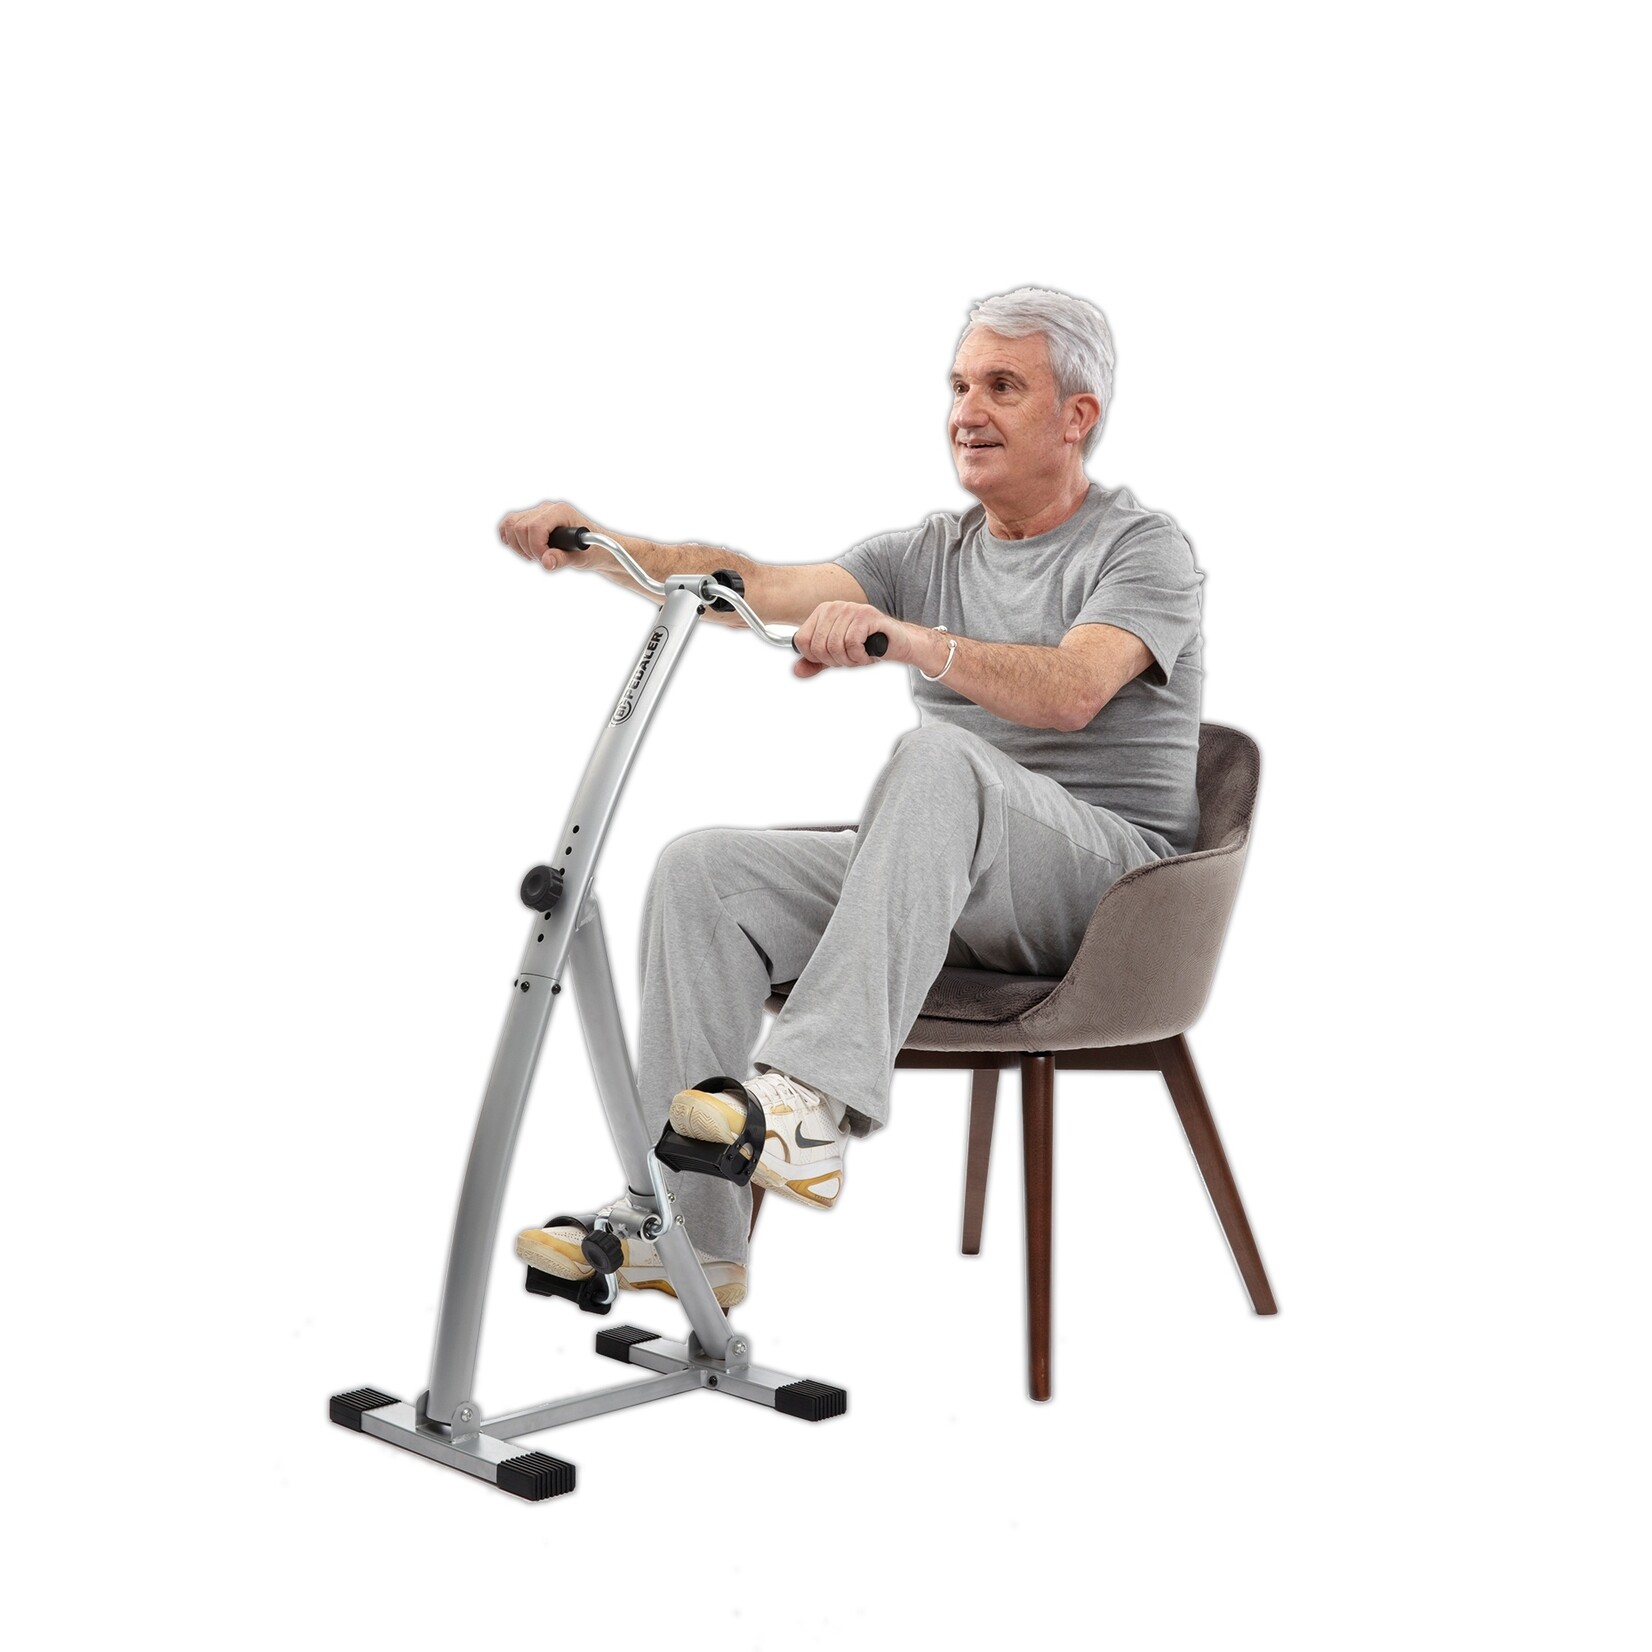 Gymform Gymform Bi-pedaler Verstelbare Stoelfiets voor Training van Armen en Benen